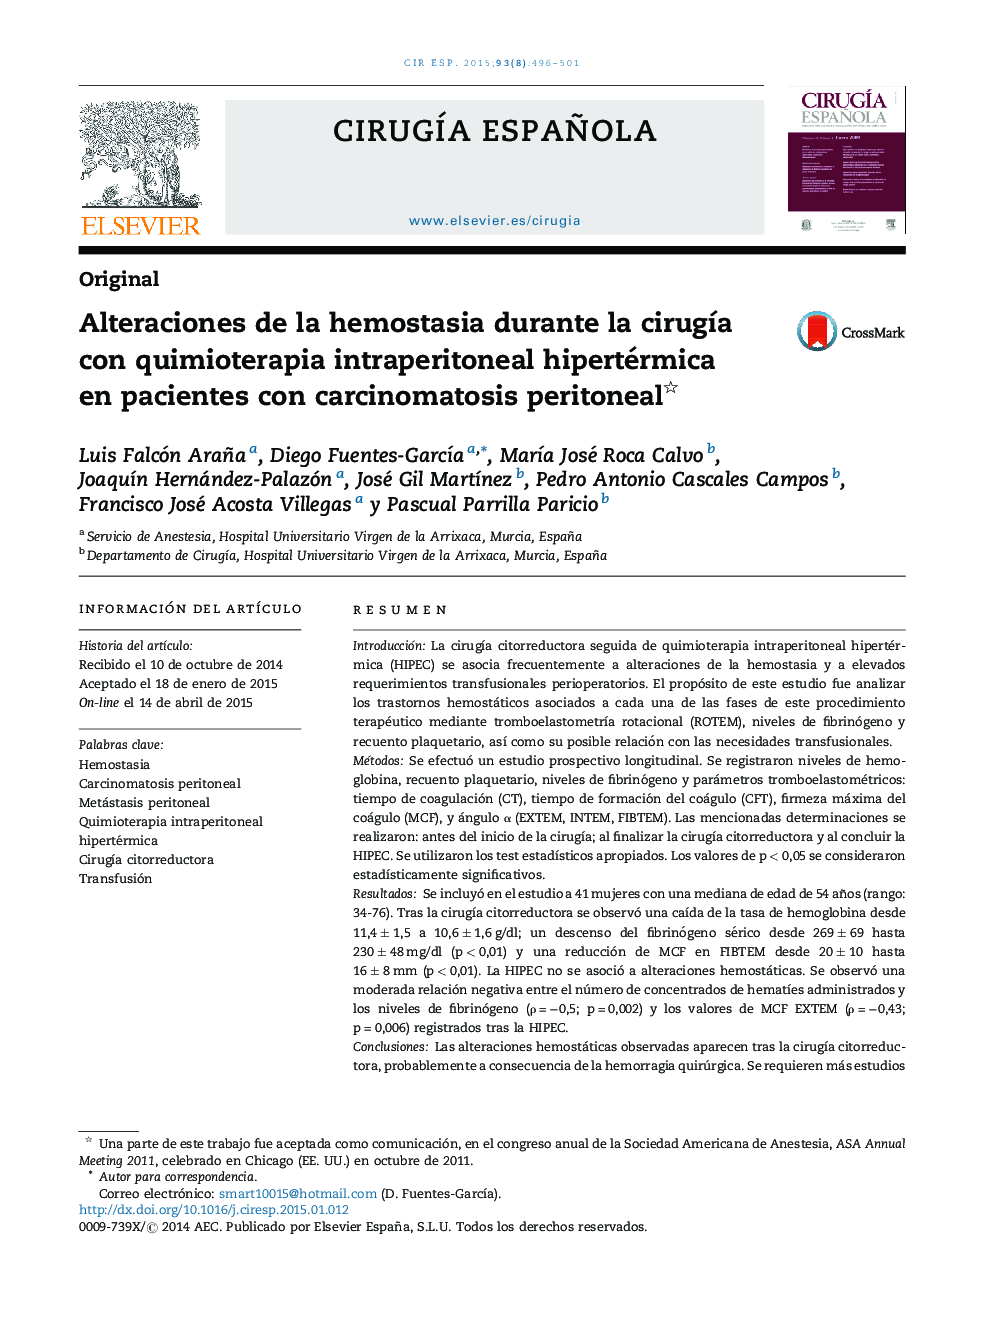 Alteraciones de la hemostasia durante la cirugÃ­a con quimioterapia intraperitoneal hipertérmica en pacientes con carcinomatosis peritoneal